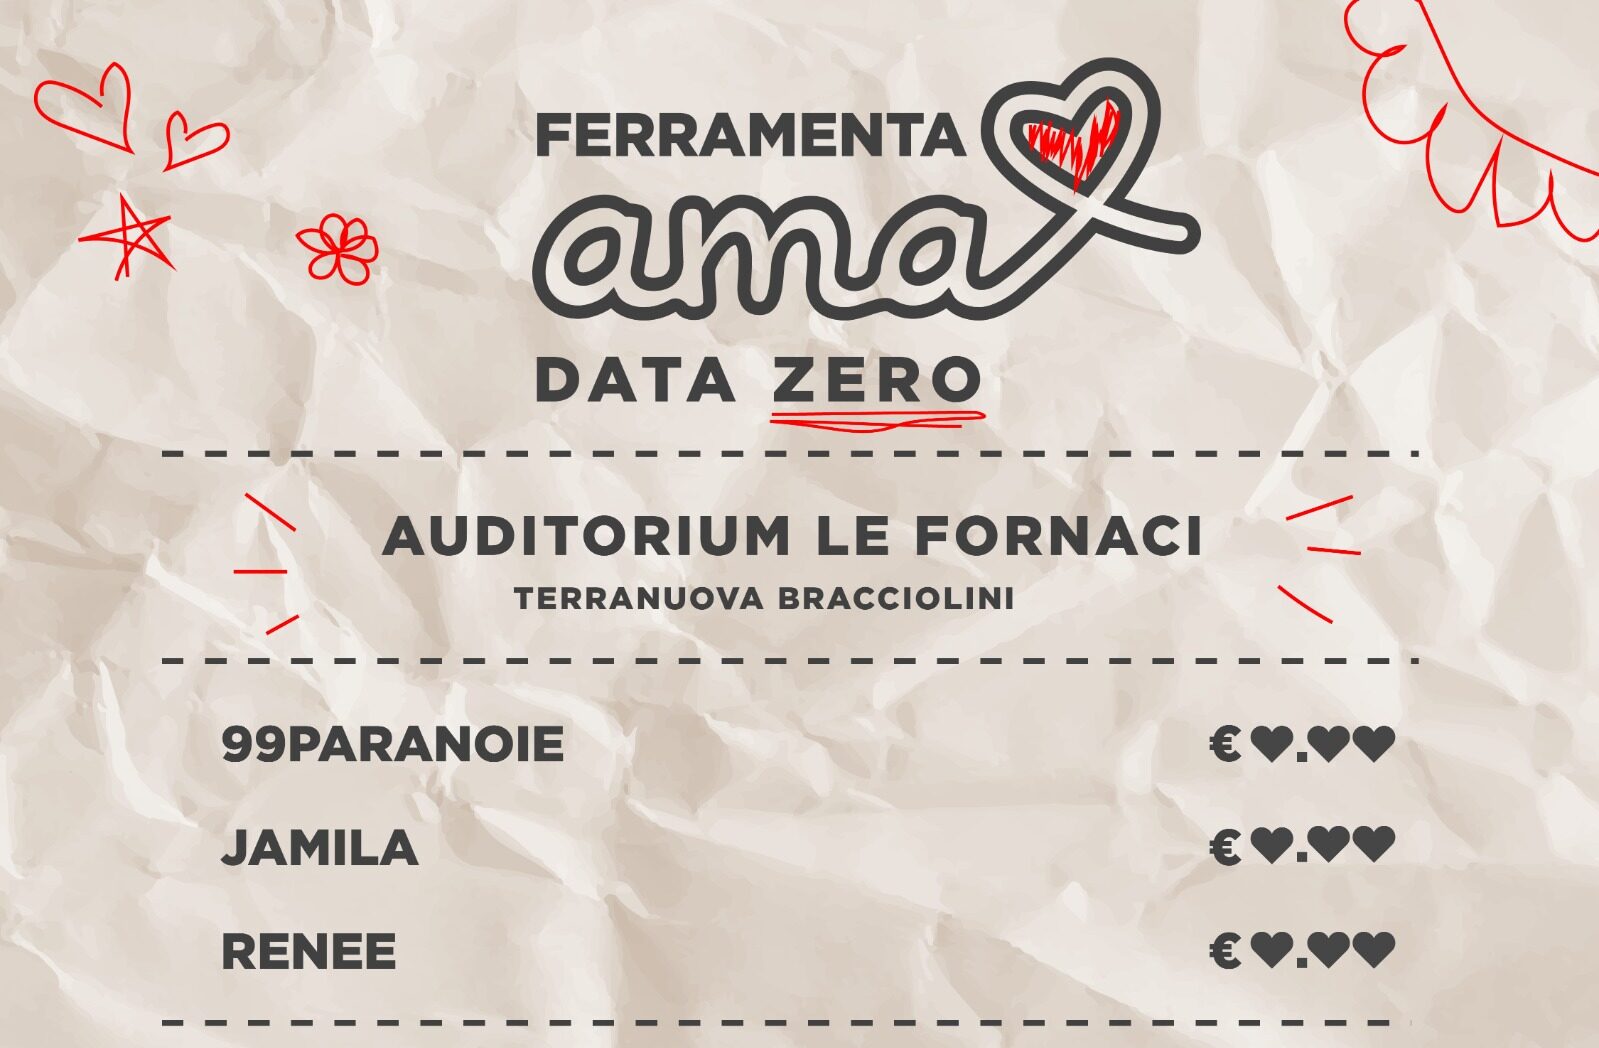 Kanterstrasse Teatro in collaborazione con Ferramenta Dischi presenta Ferramenta Ama: Data Zero